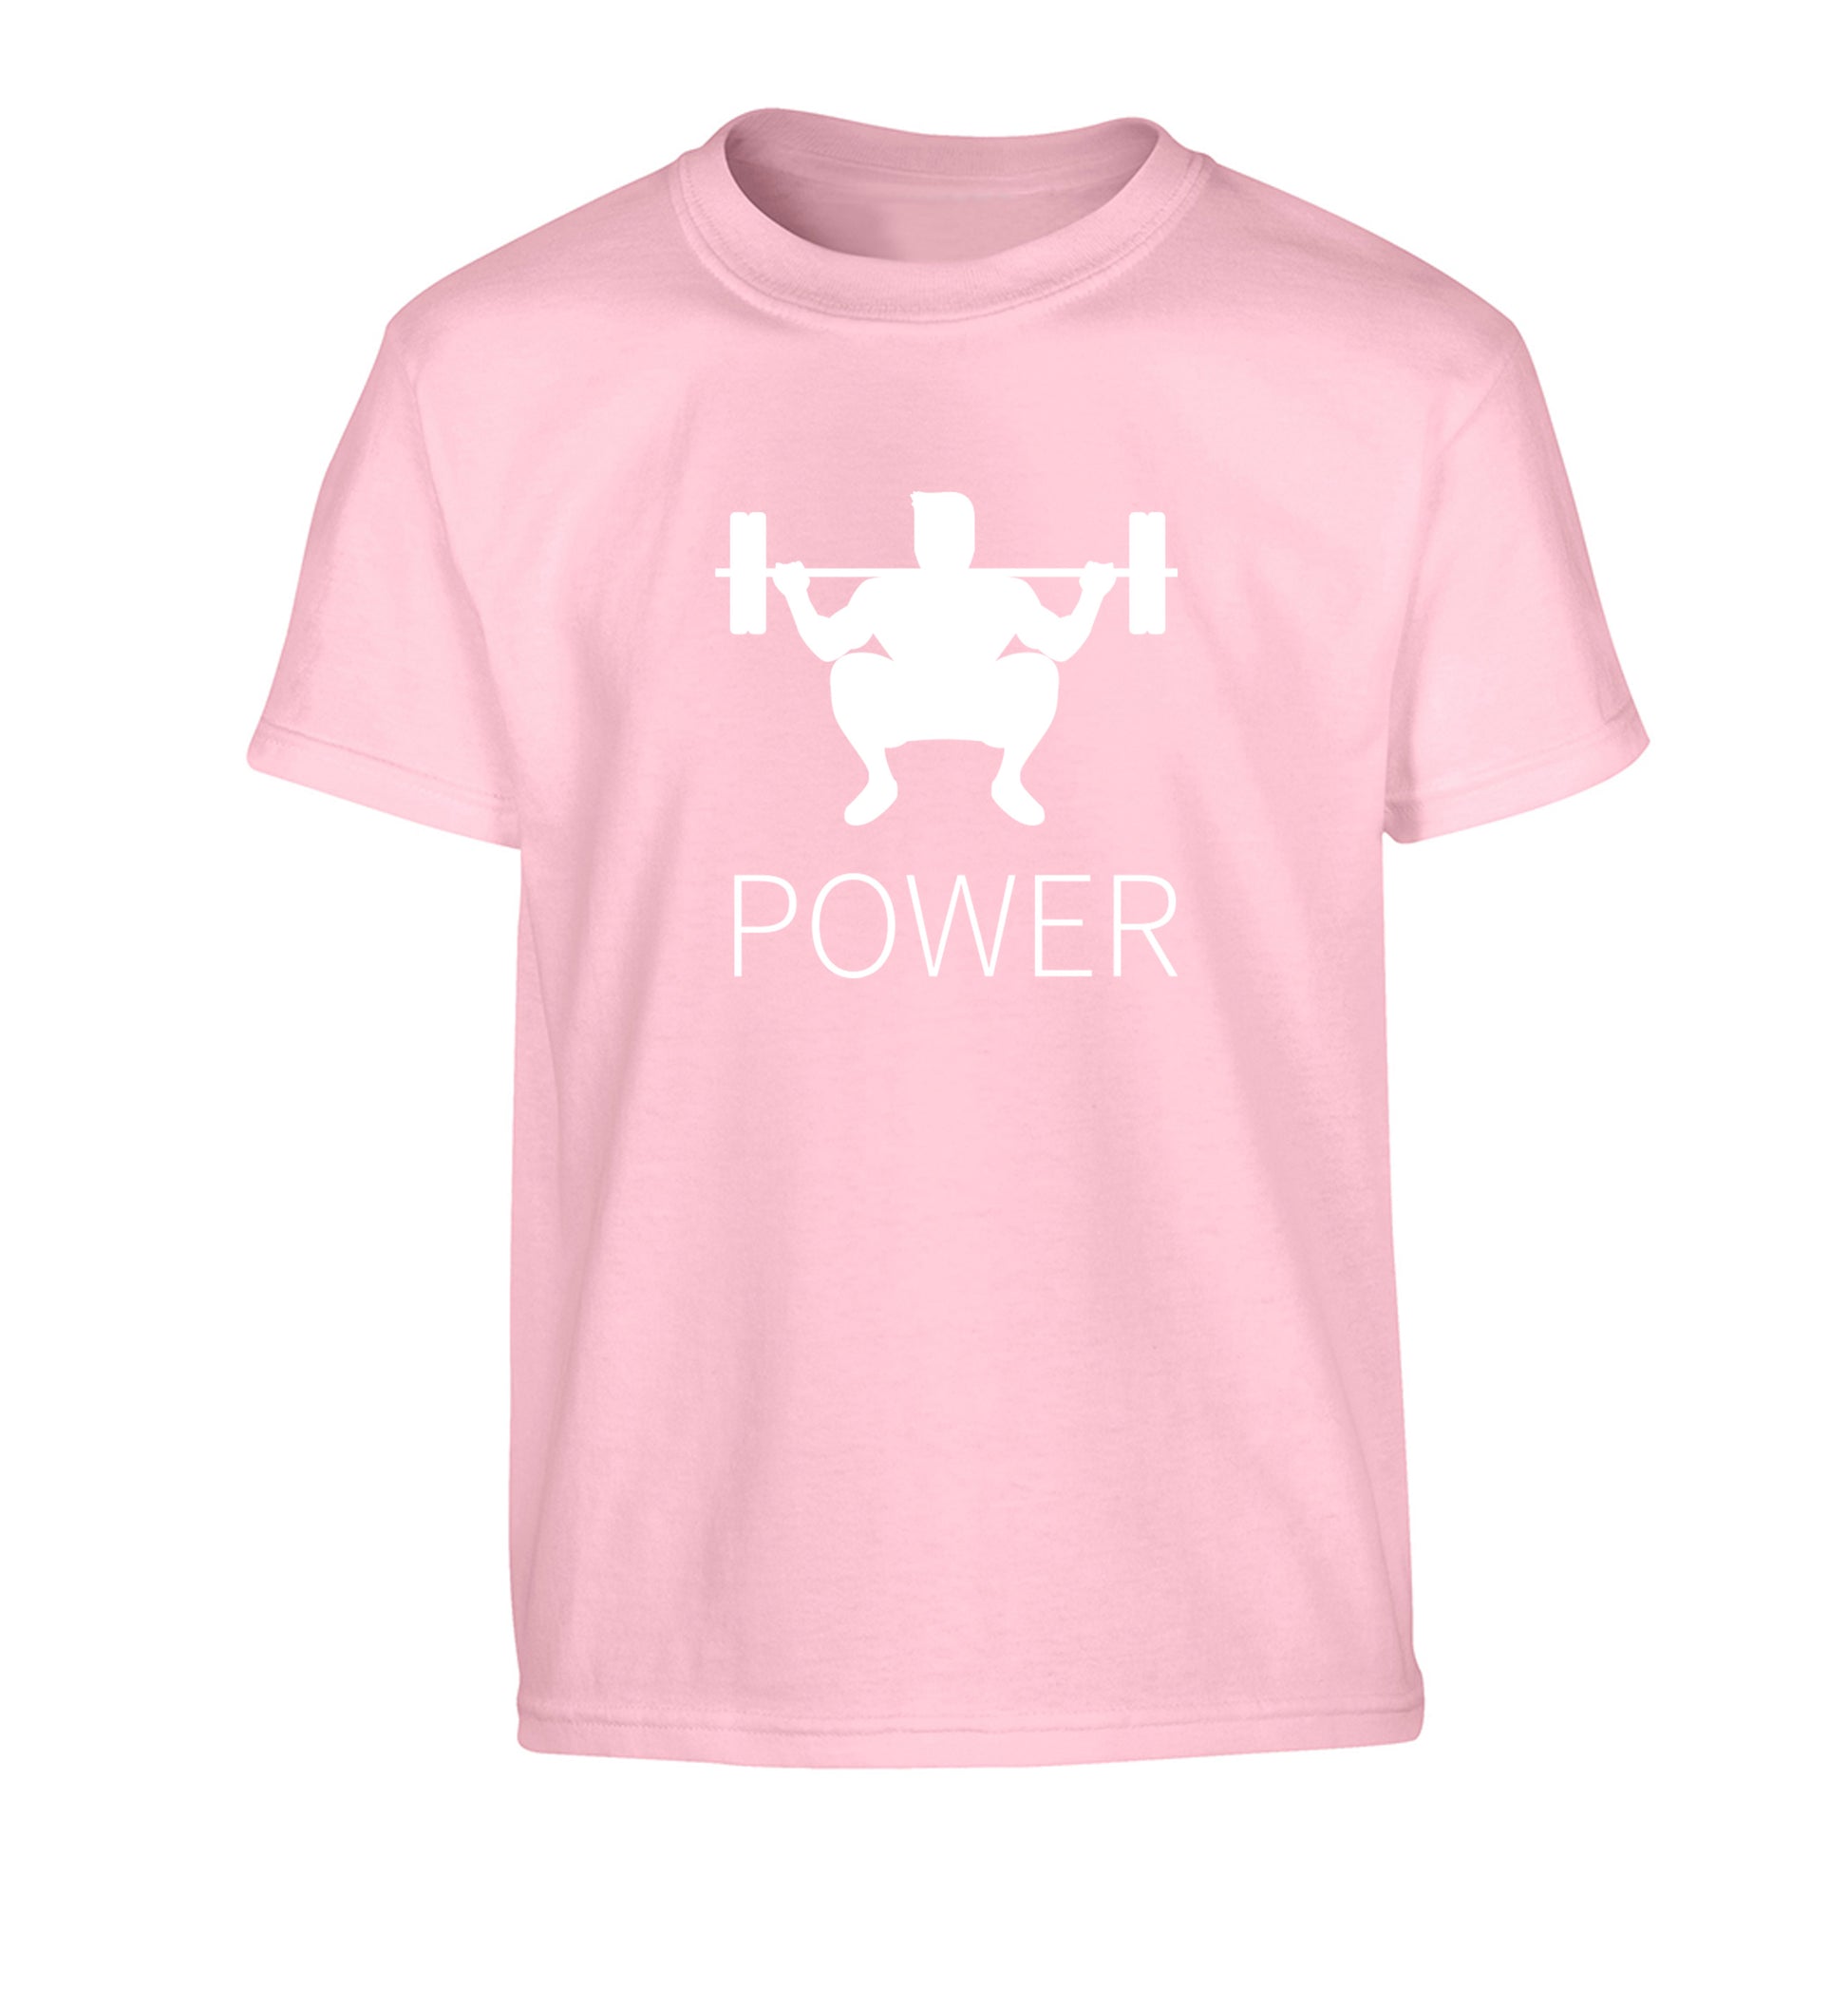 Lift power Children's light pink Tshirt 12-13 Years